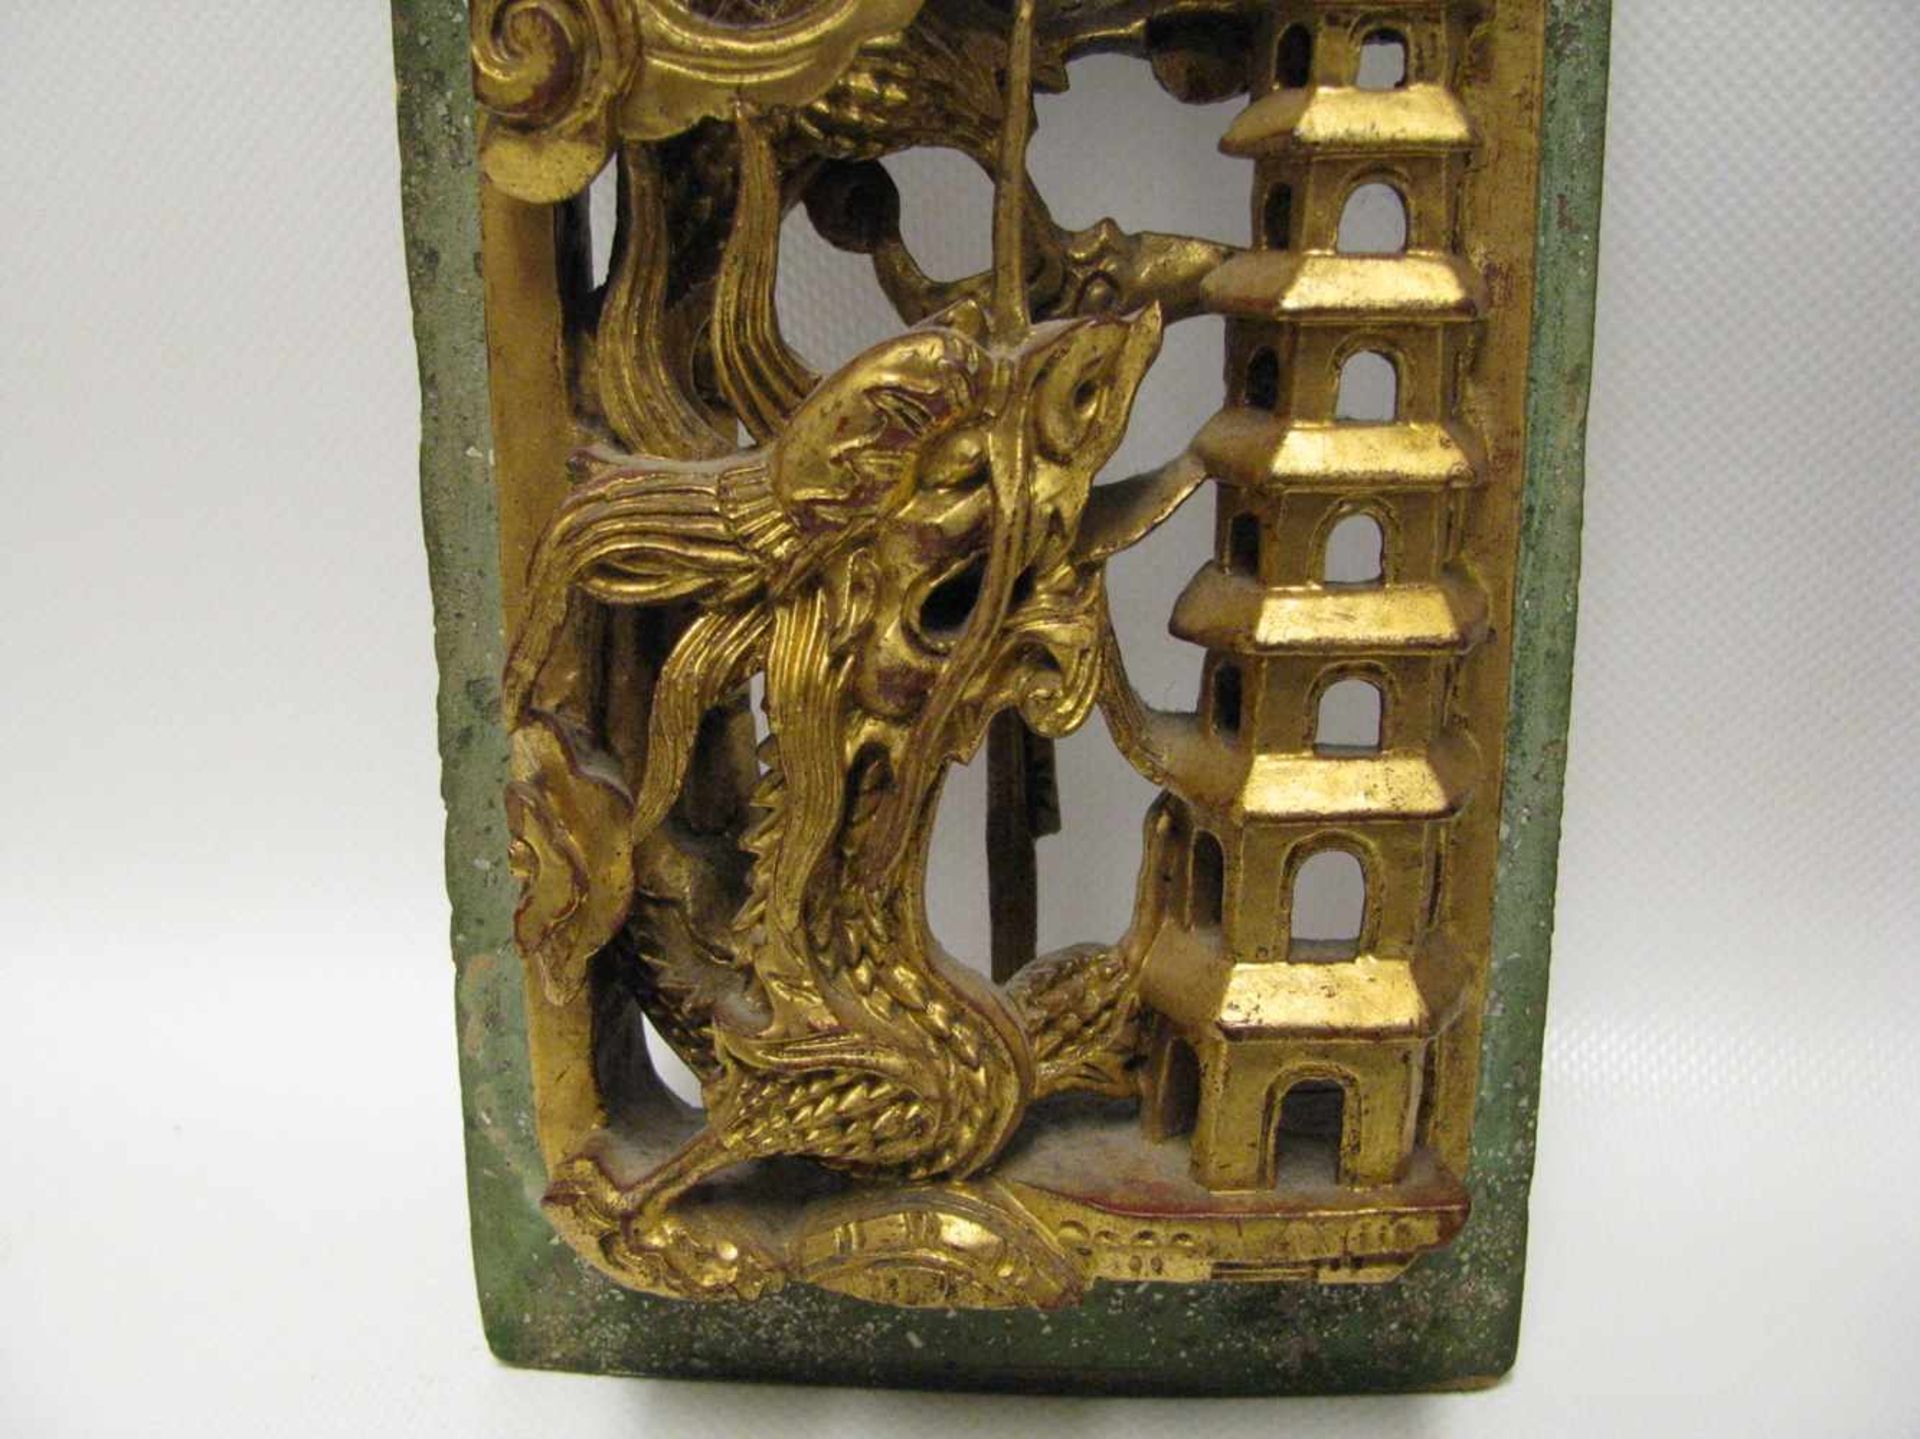 Schnitzerei, China, 19. Jahrhundert, Edelholz fein beschnitzt mit Darstellungen von Drachen, - Bild 2 aus 4